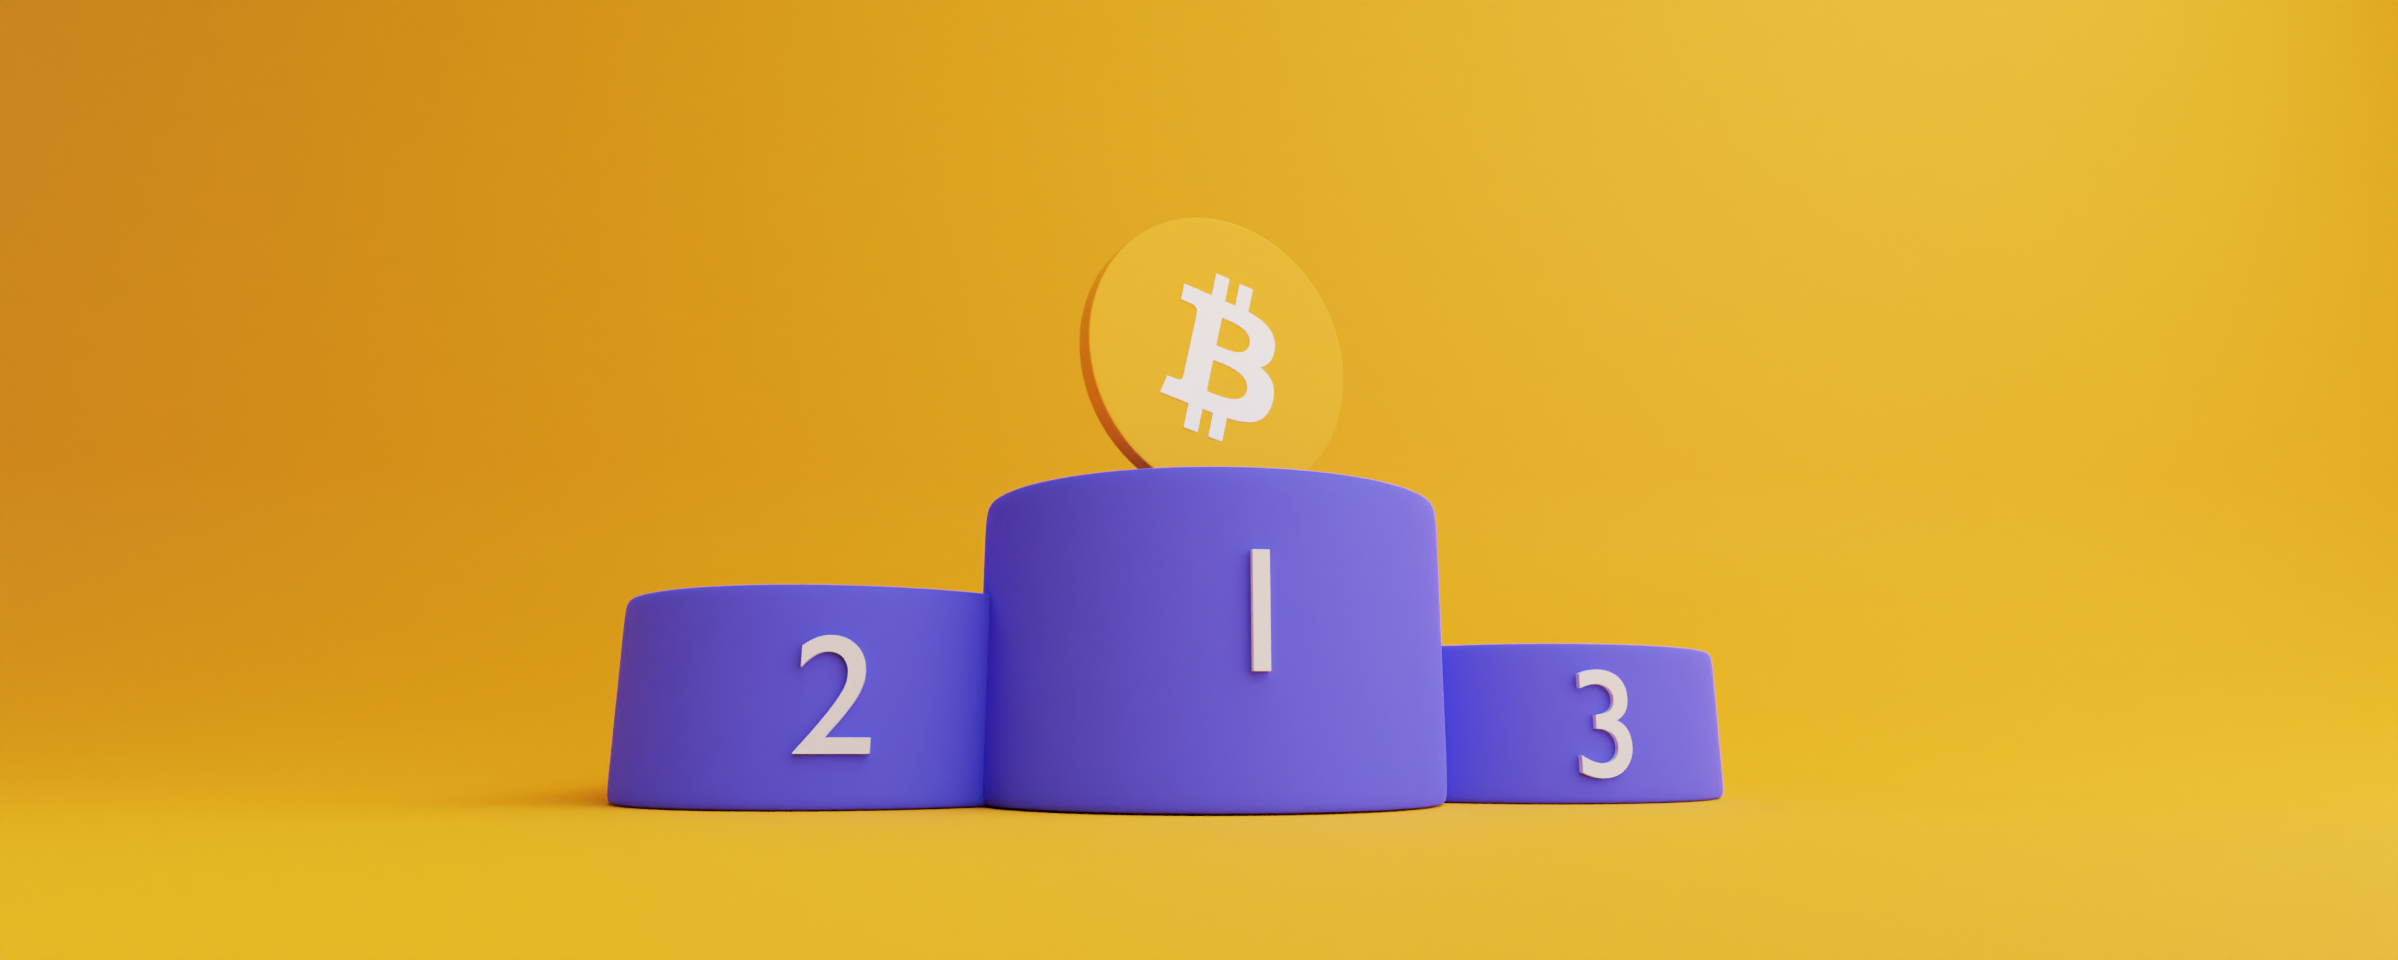 Hvordan fungerer Bitcoin?